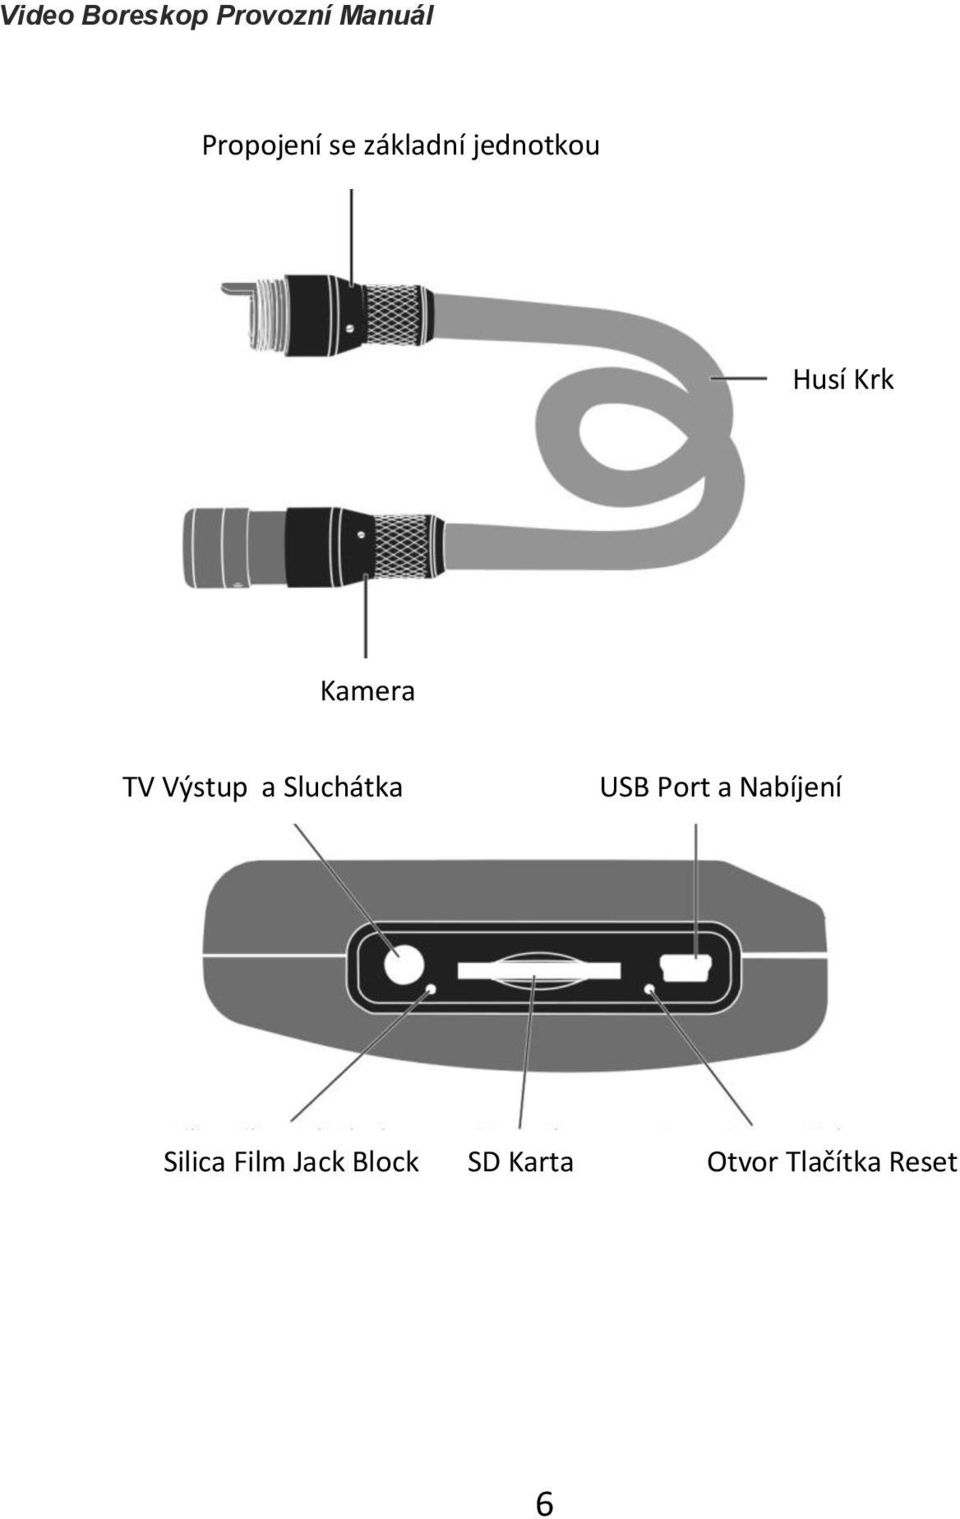 Sluchátka USB Port a Nabíjení